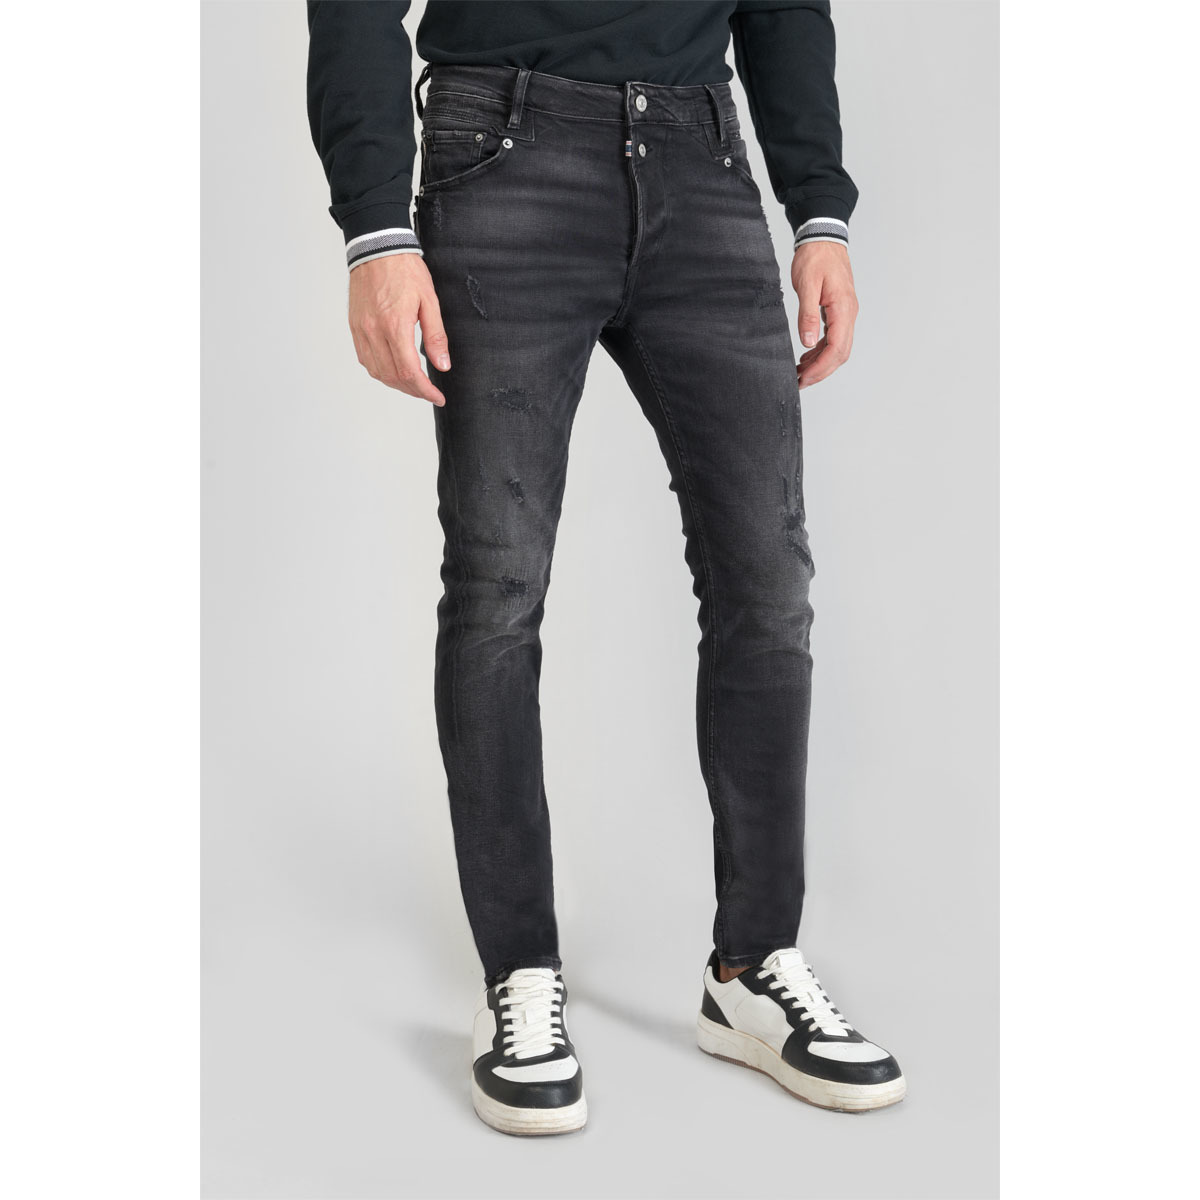 Le Temps des Cerises Noir Riff 900/16 tapered jeans des